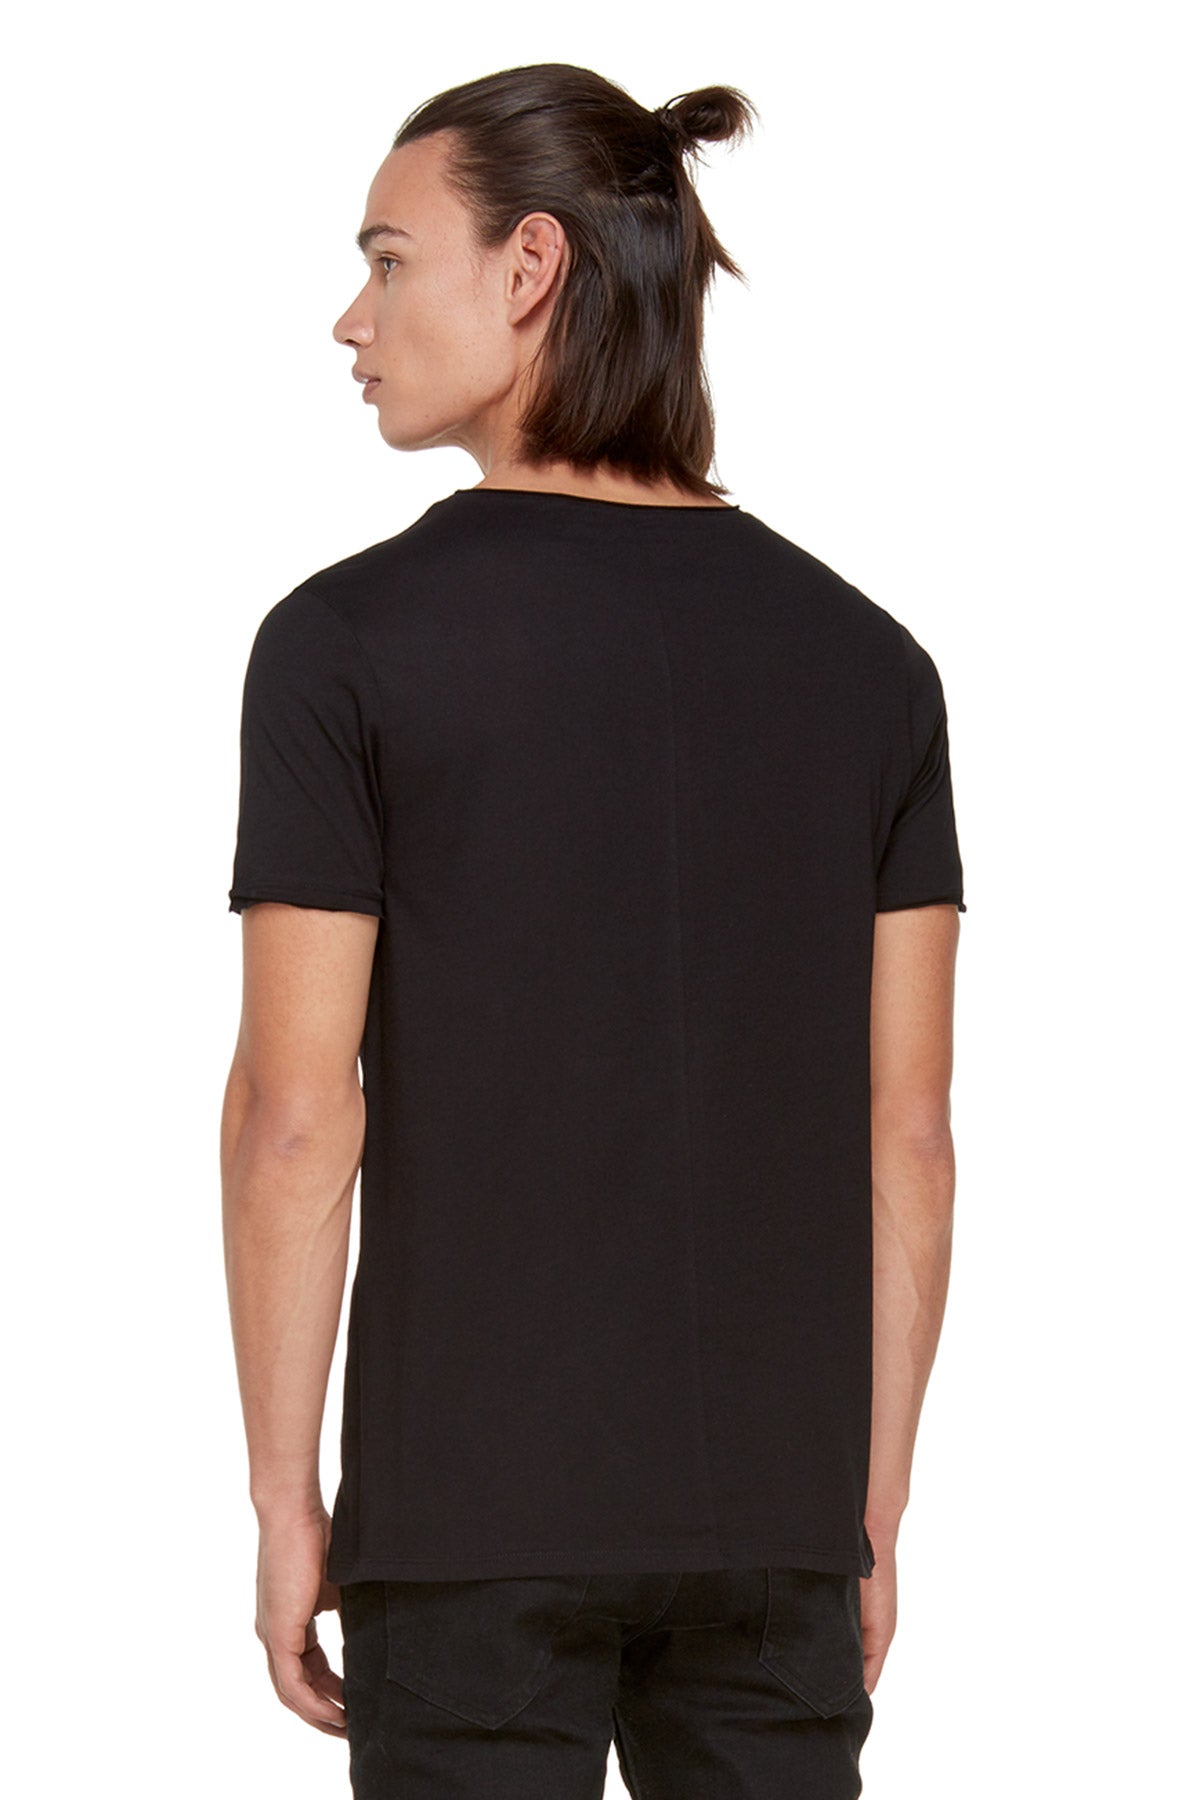 Tru T-shirt-Libas Trendy Fashion Store